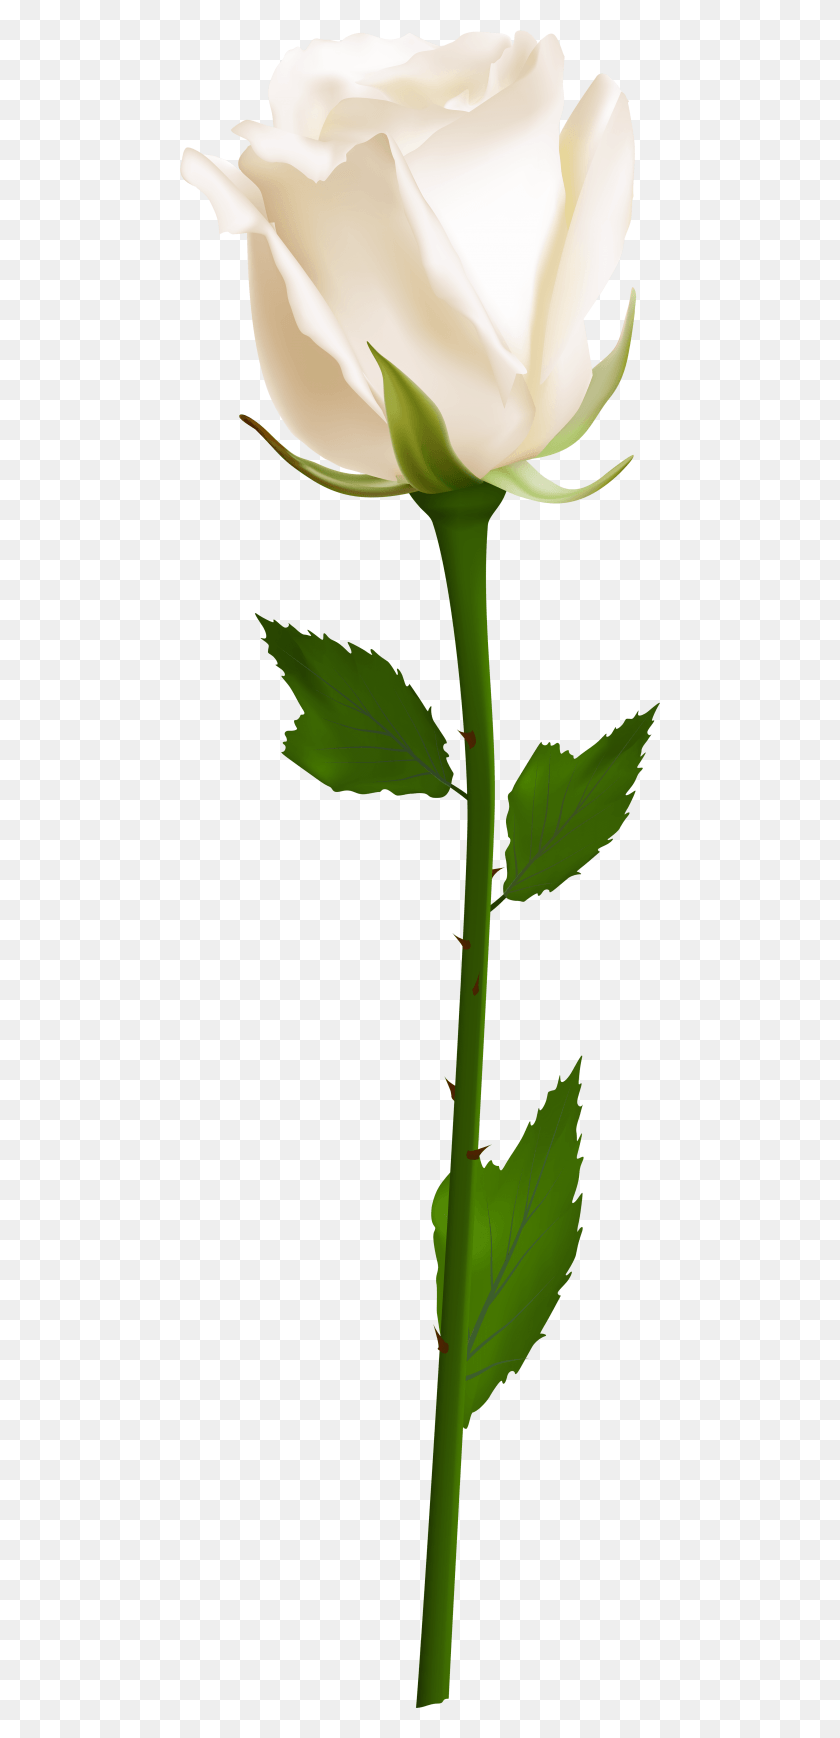 480x1678 Бесплатные Изображения Одной Белой Розы Фон Белая Роза Прозрачная, Лист, Растение, Цветок Hd Png Скачать